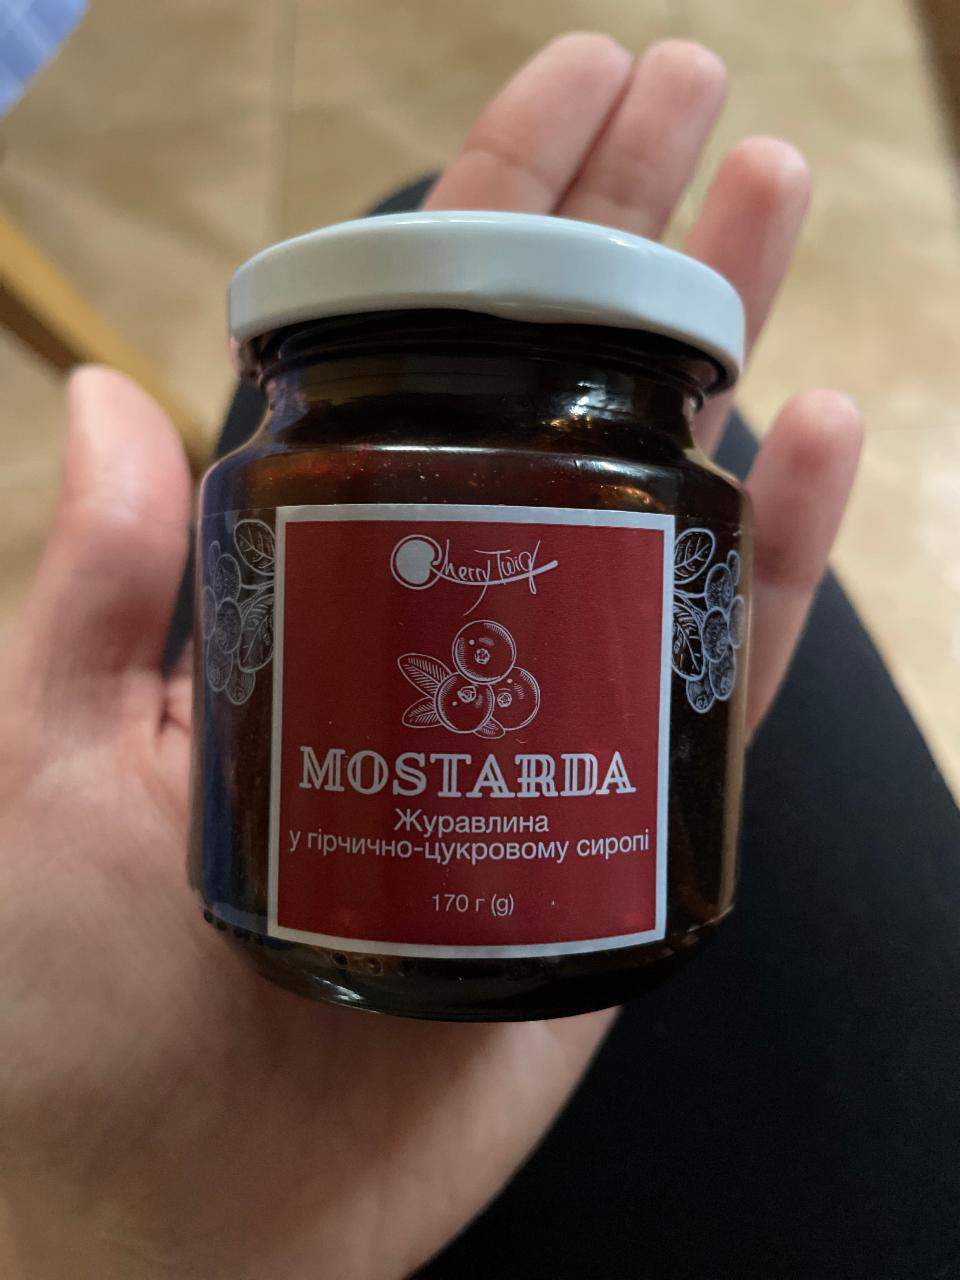 Фото - Mostarda журавлина в гірчично-цукровому сиропі Cherrytwig